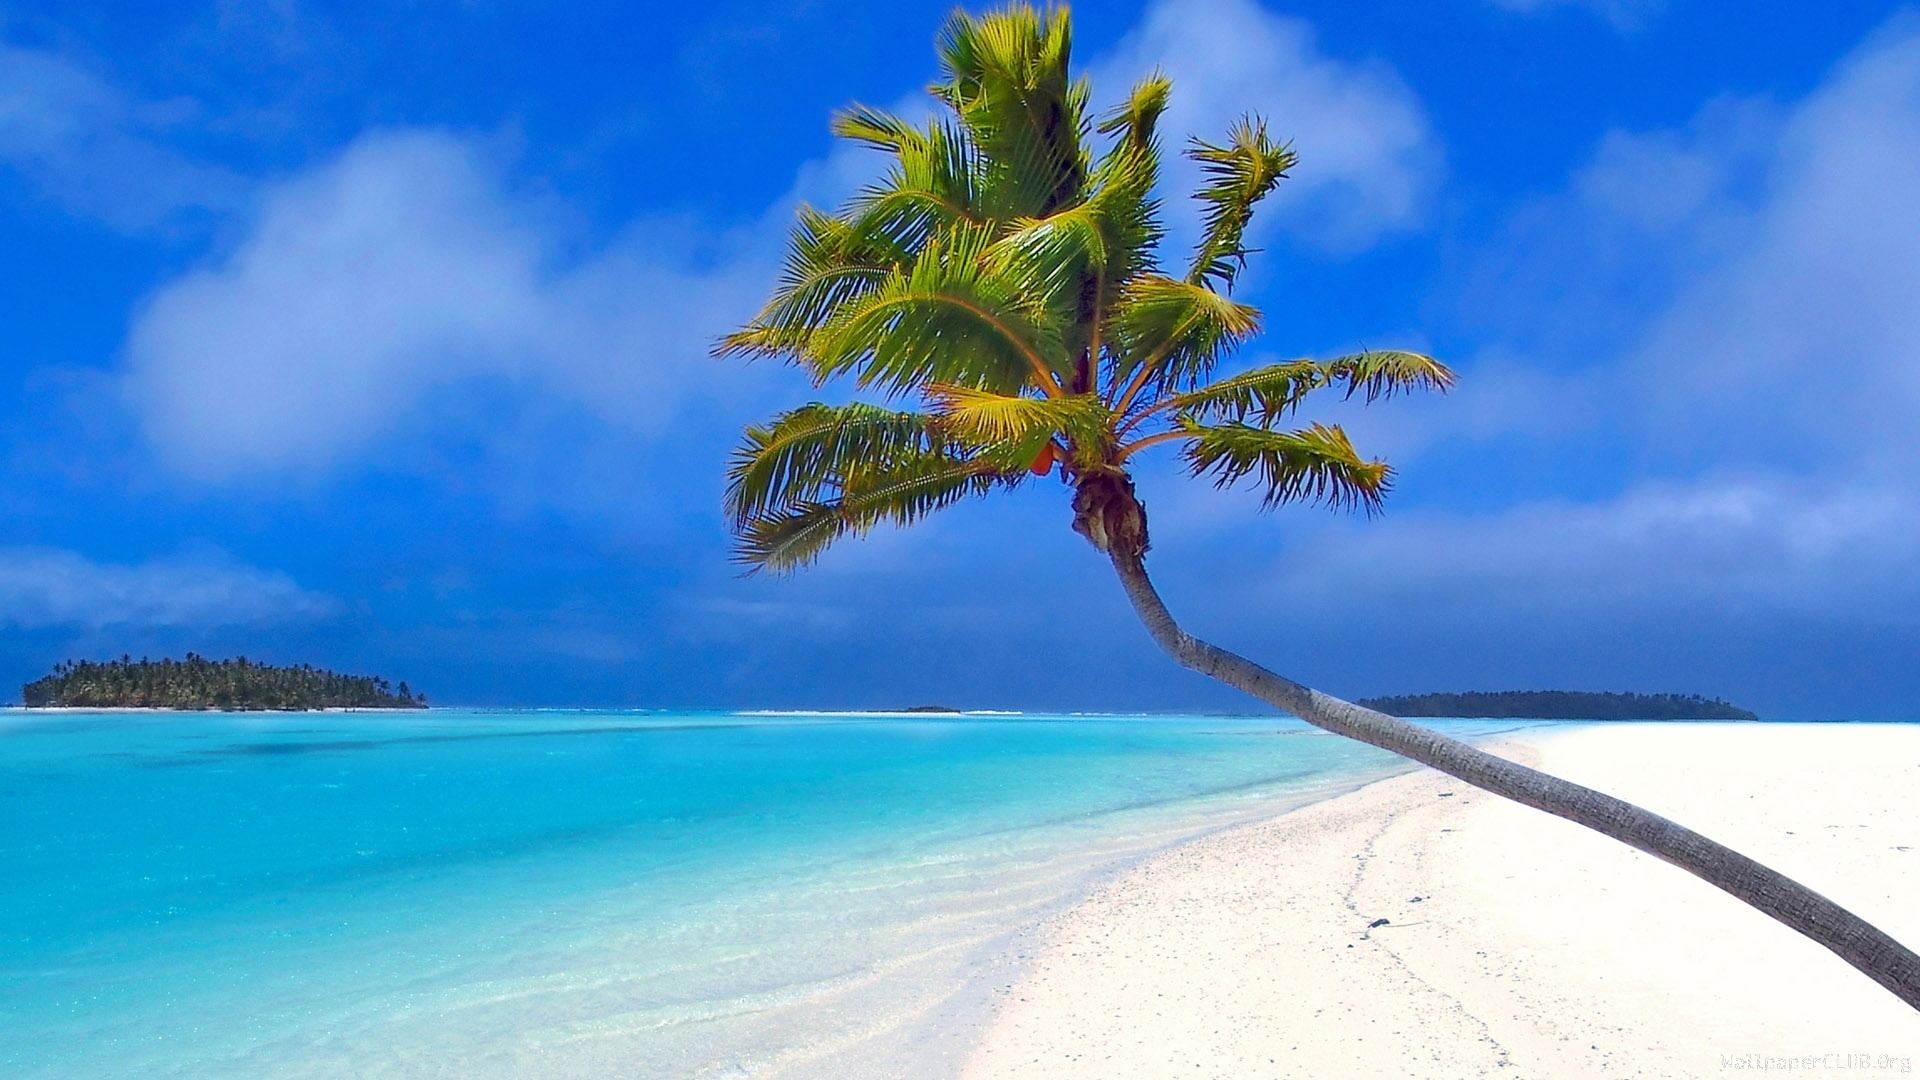 최고의 해변 배경 화면,자연,하늘,나무,자연 경관,카리브해